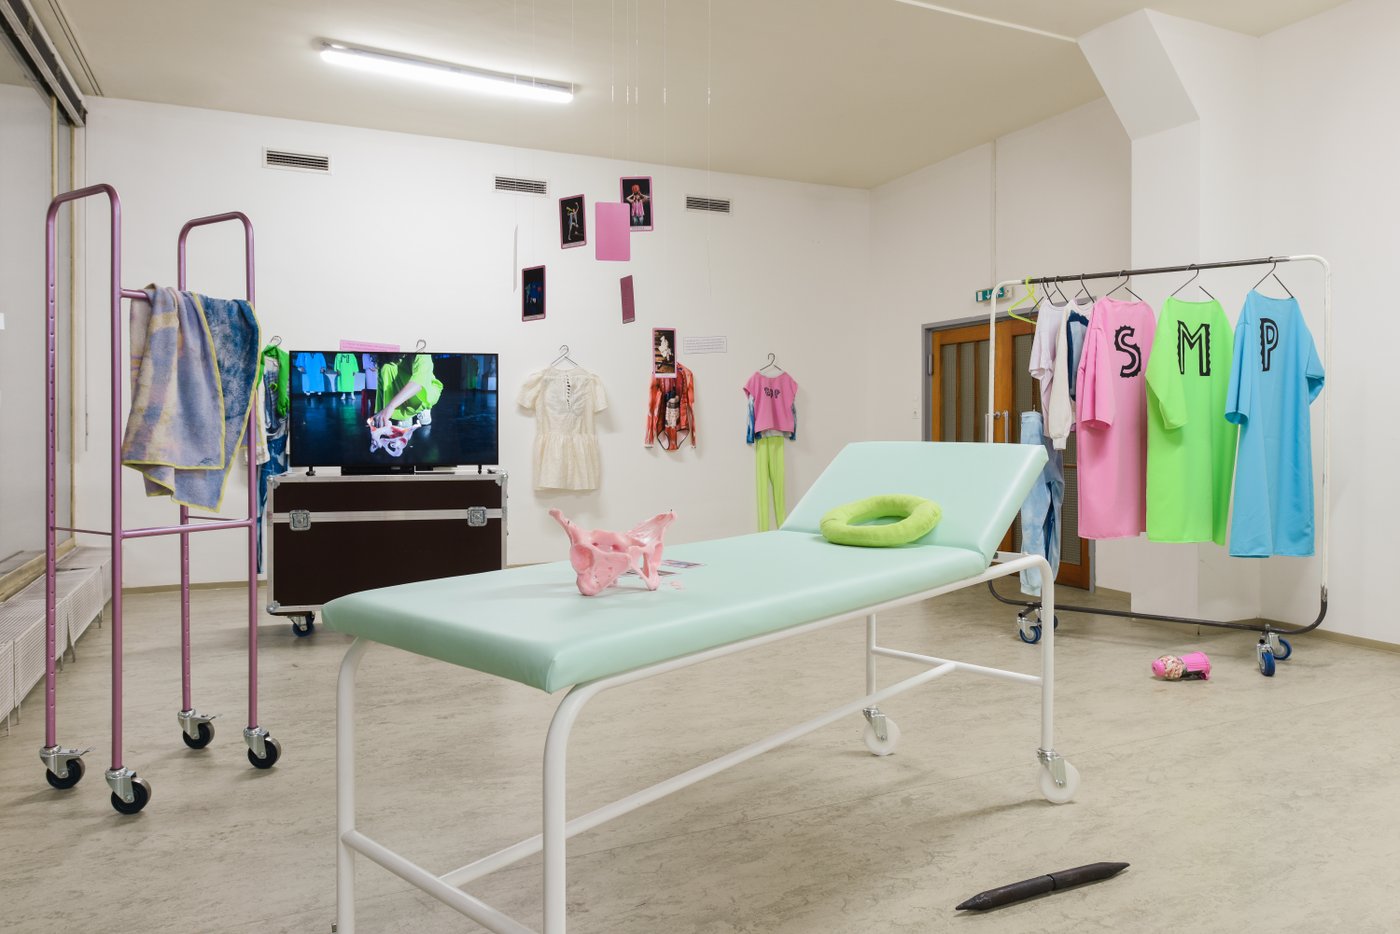 Ein Raum mit einer Krankenliege, einem gefüllten Kleiderständer und einem großen Videoscreen